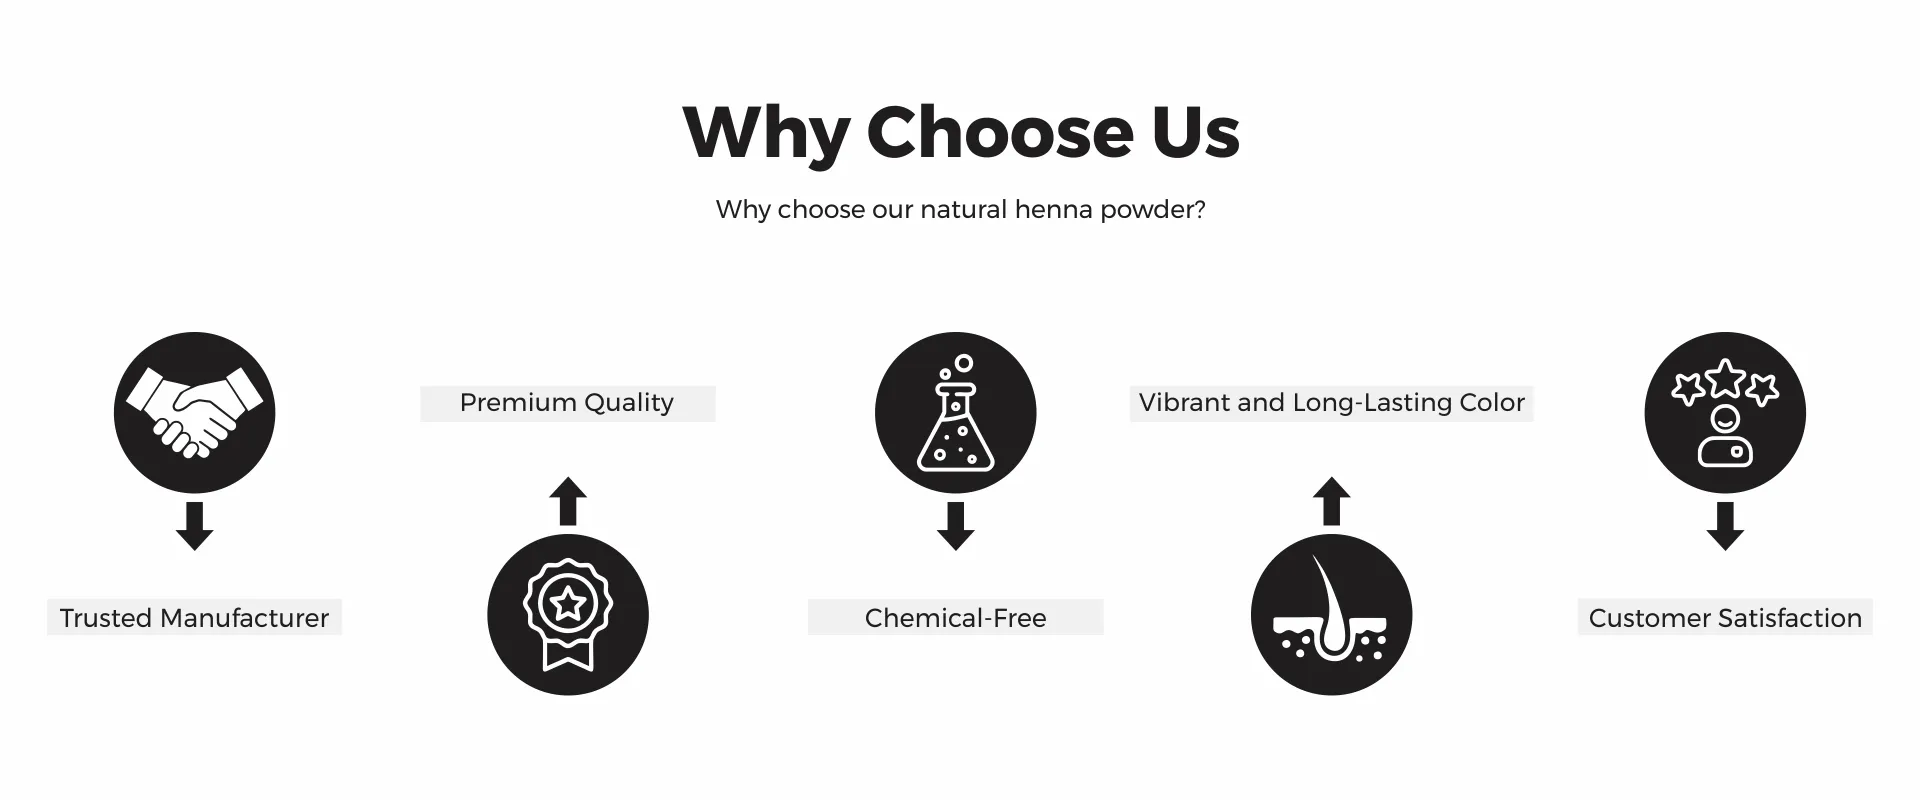 Why Choose us - www.dkihenna.com